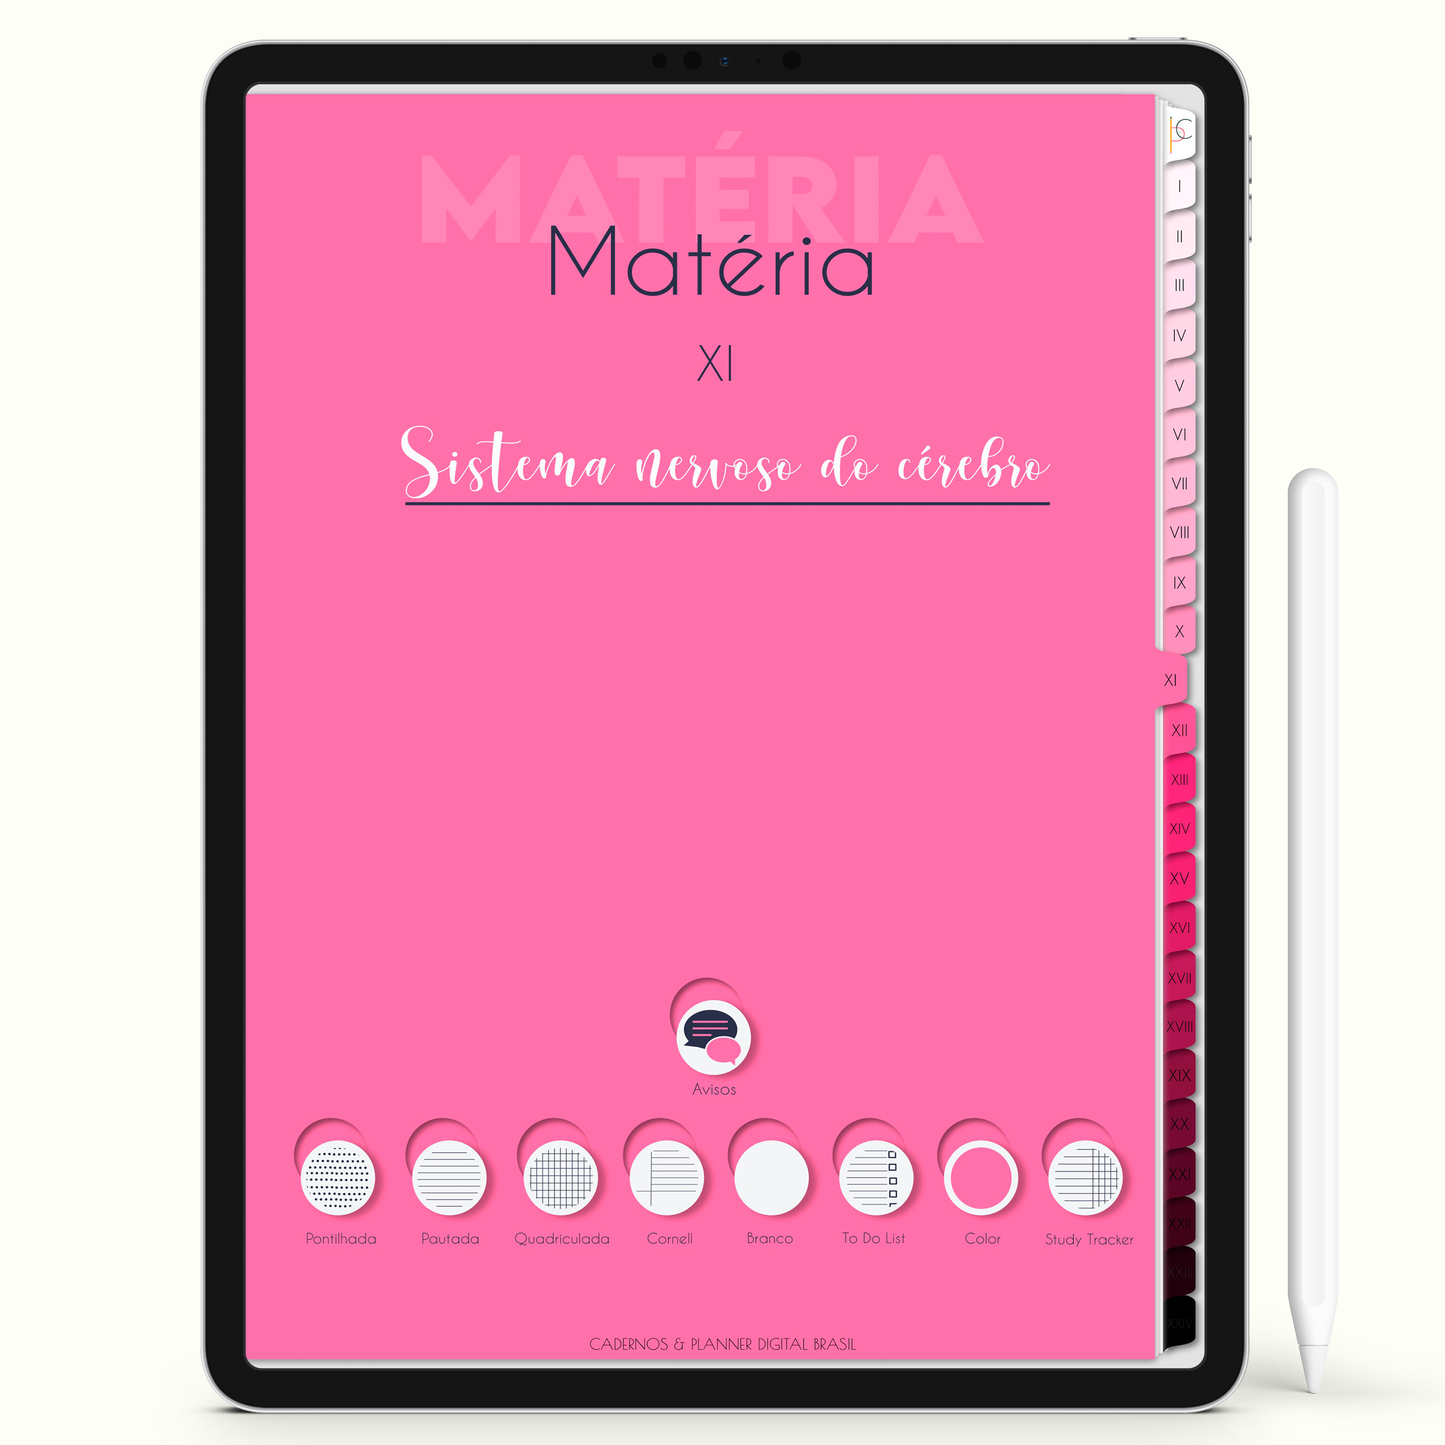 Caderno Digital Blush Imensidão 24 Matérias • iPad e Tablet Android • Download instantâneo • Sustentável